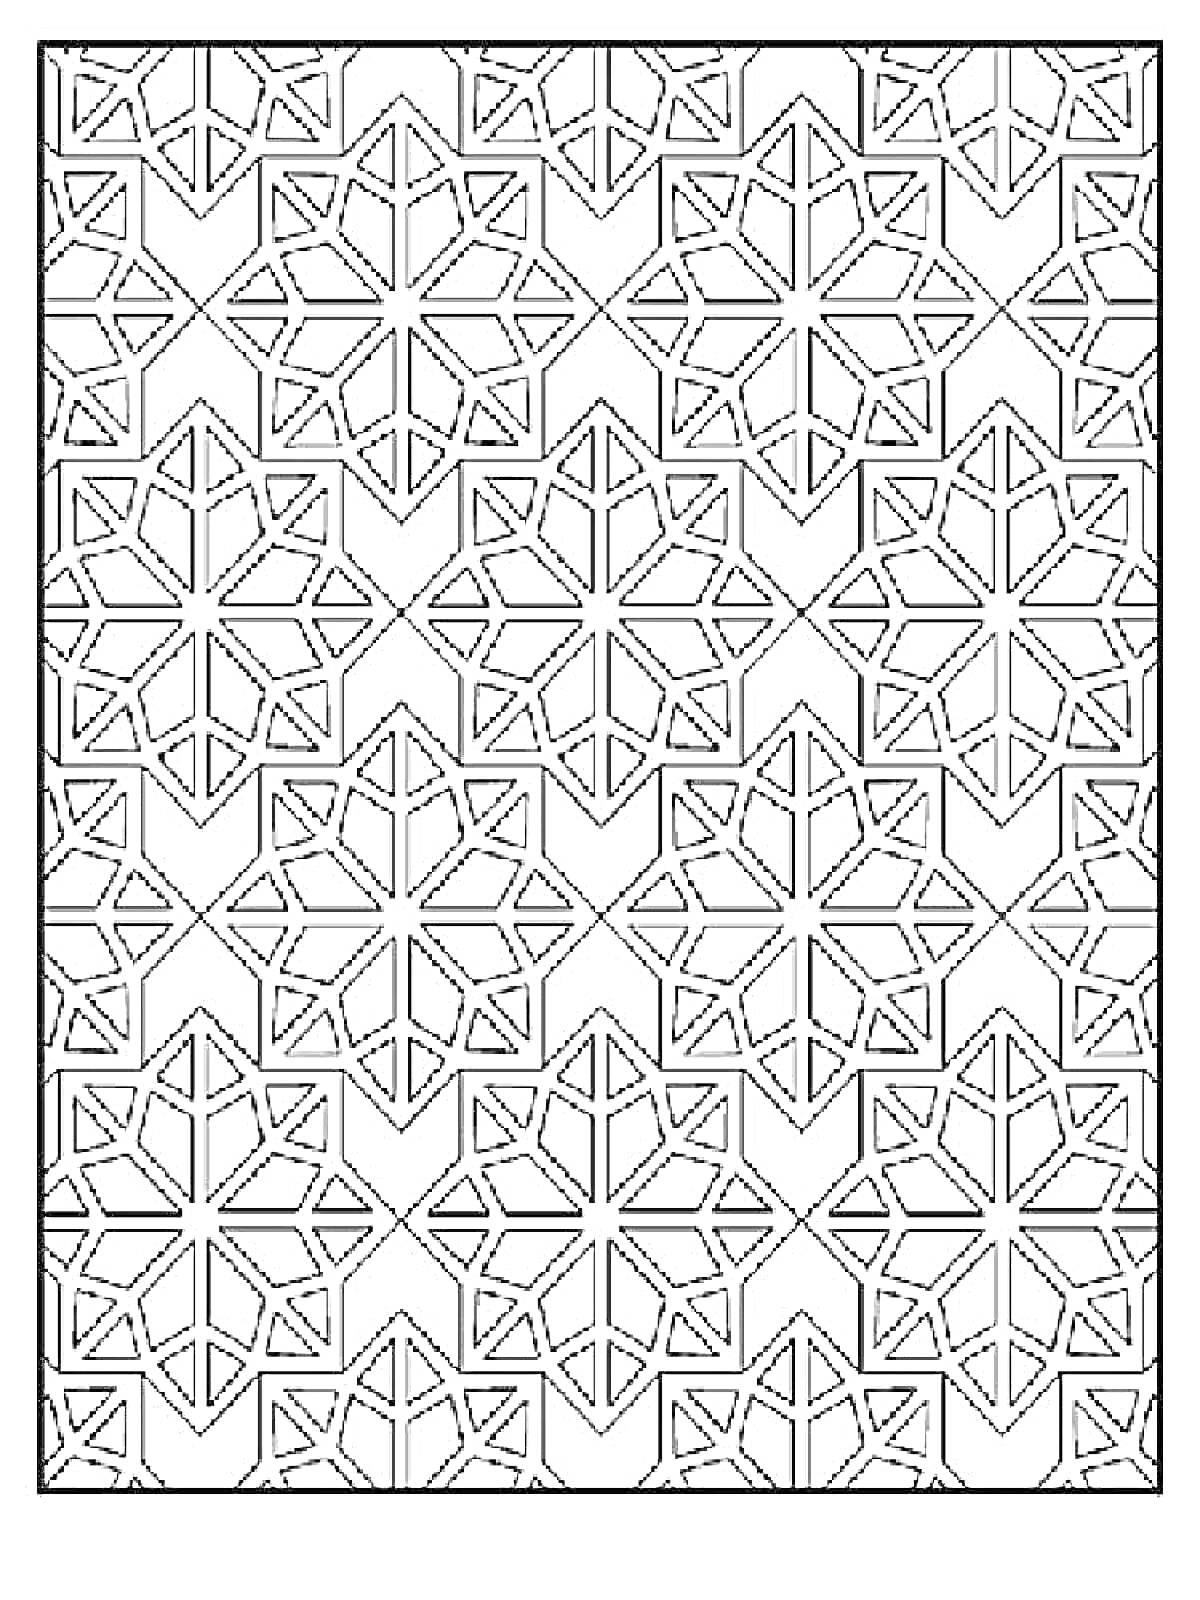 Мозаика антистресс с шестиугольными звездами и треугольниками